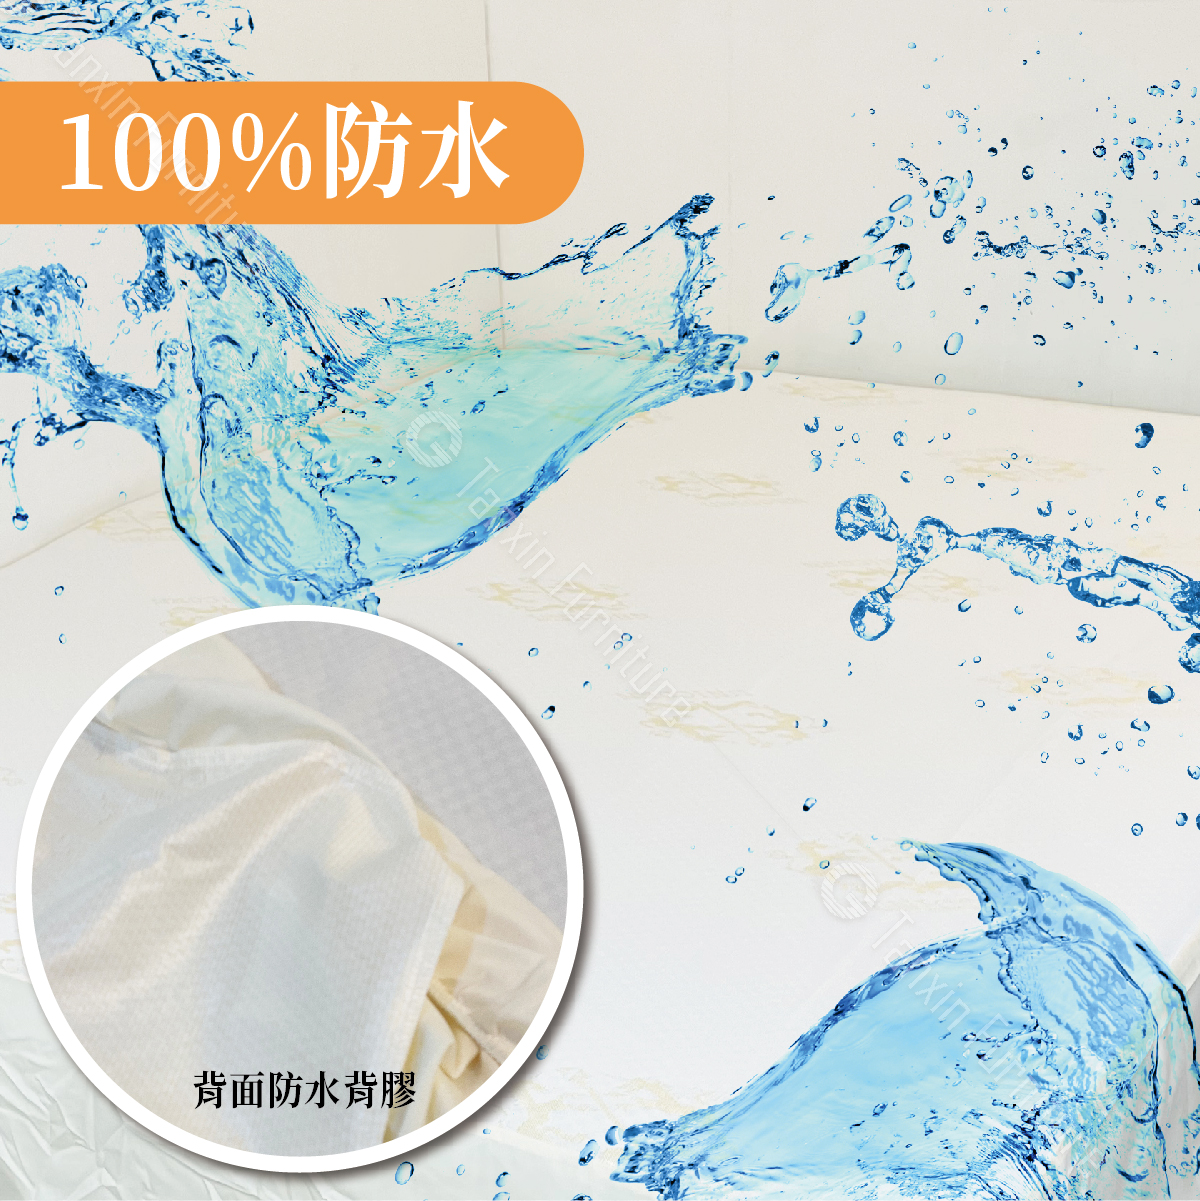 100%防水防螨床包式保潔墊/舒適柔軟/100%防水/防螨抗菌